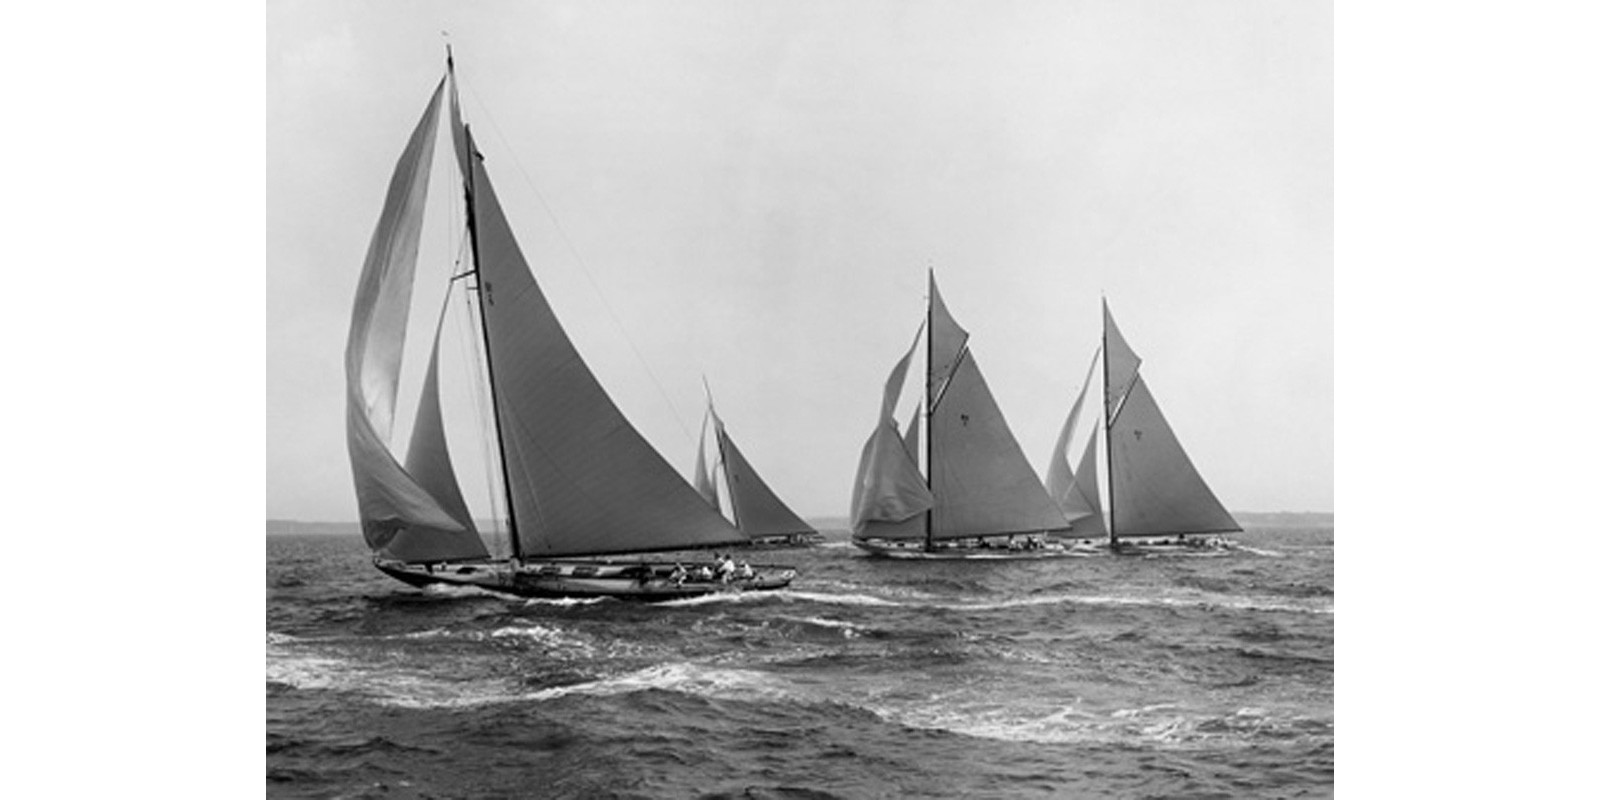 Edwin Levick - Sloops at Sail, 1915 (detail)